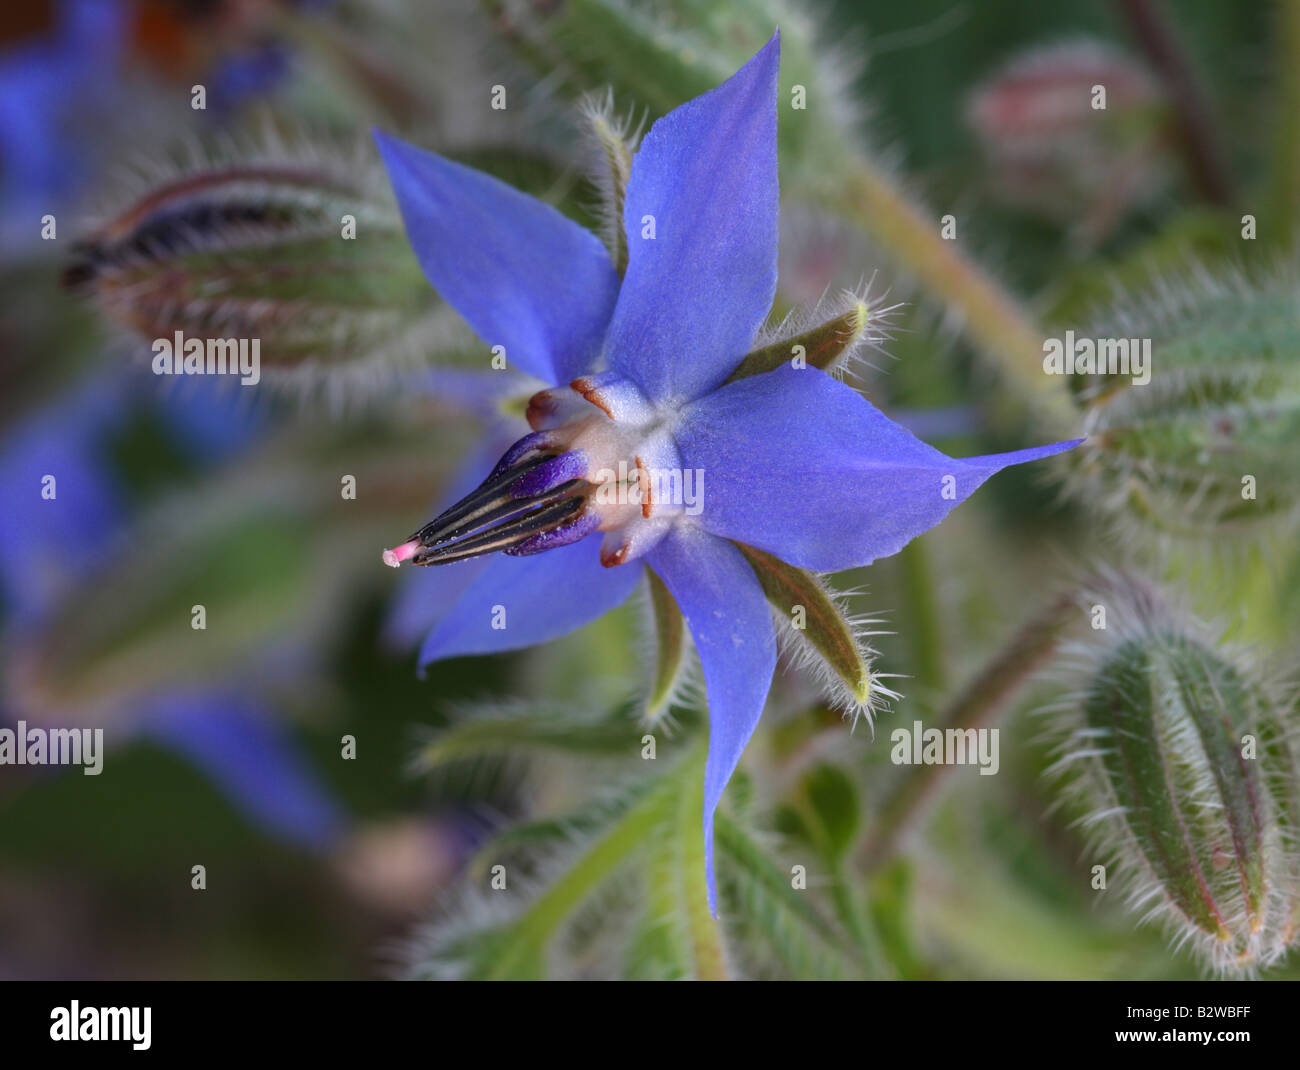 Borage, Borago officinalis, closeup of flower Stock Photo